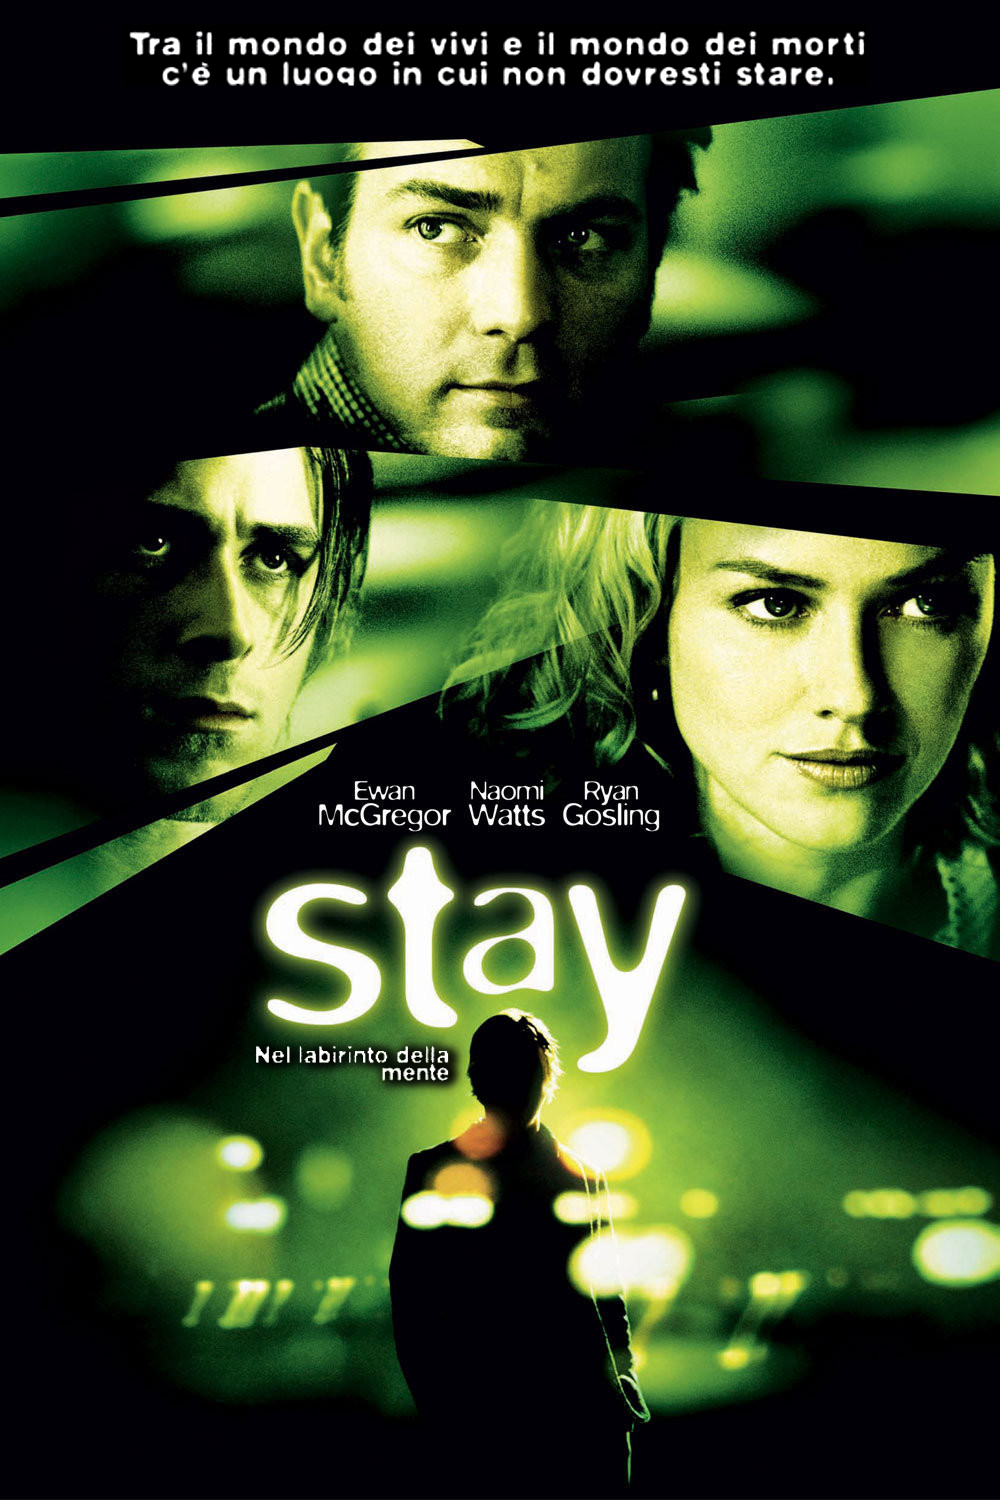 Stay – Nel labirinto della mente [HD] (2005)